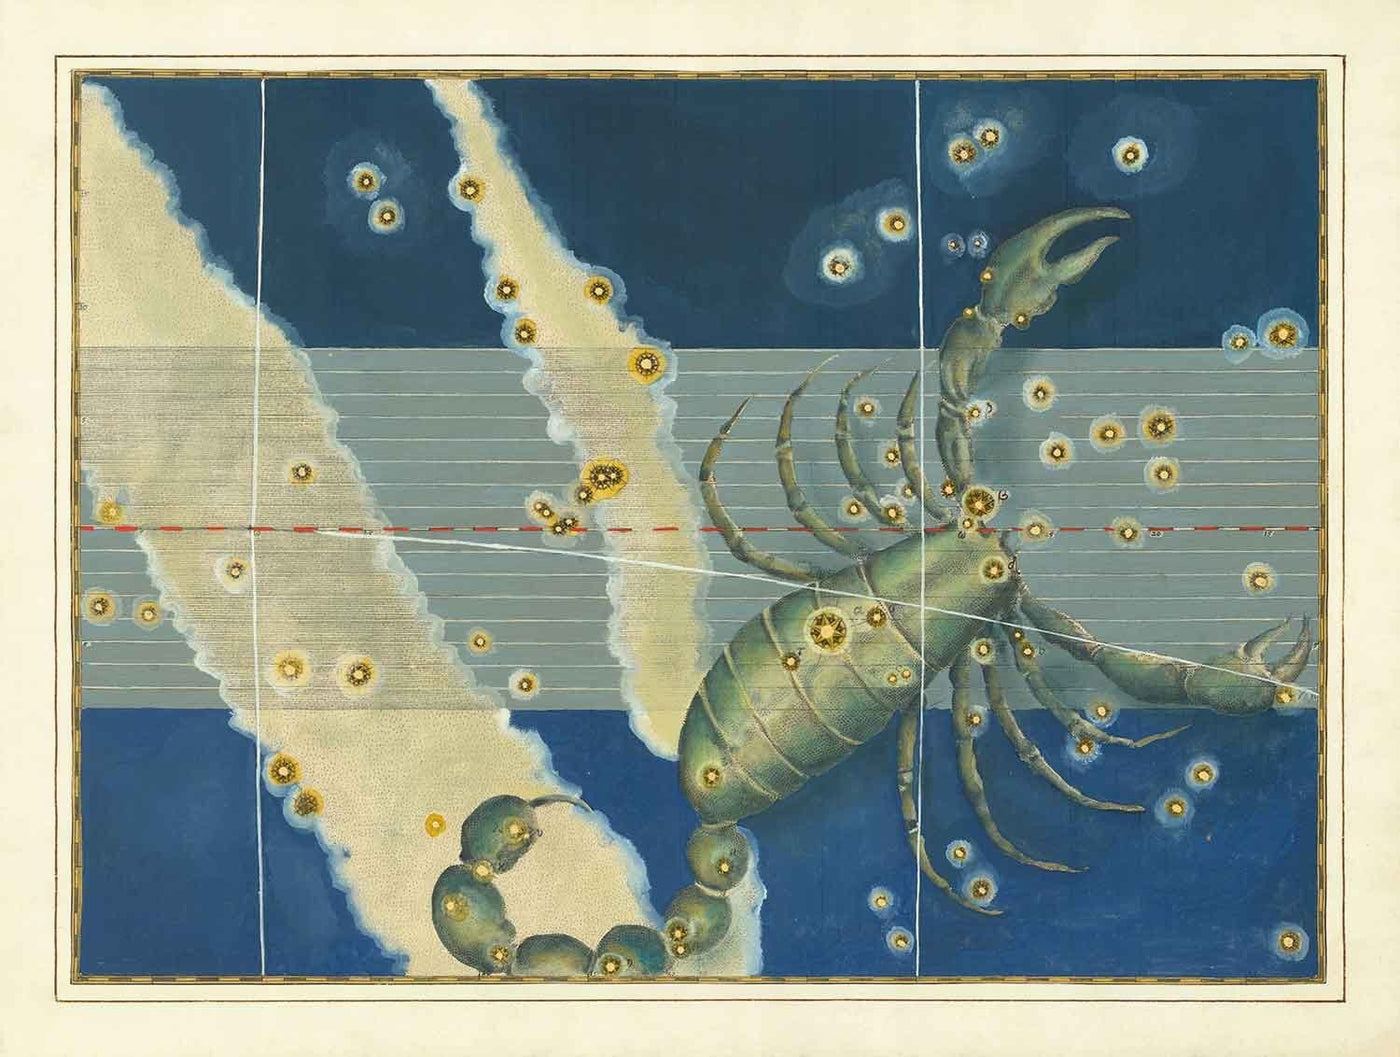 Antiguo mapa estelar de Escorpio, 1603 por Johann Bayer - Carta astrológica del zodiaco - El signo del horóscopo Escorpión